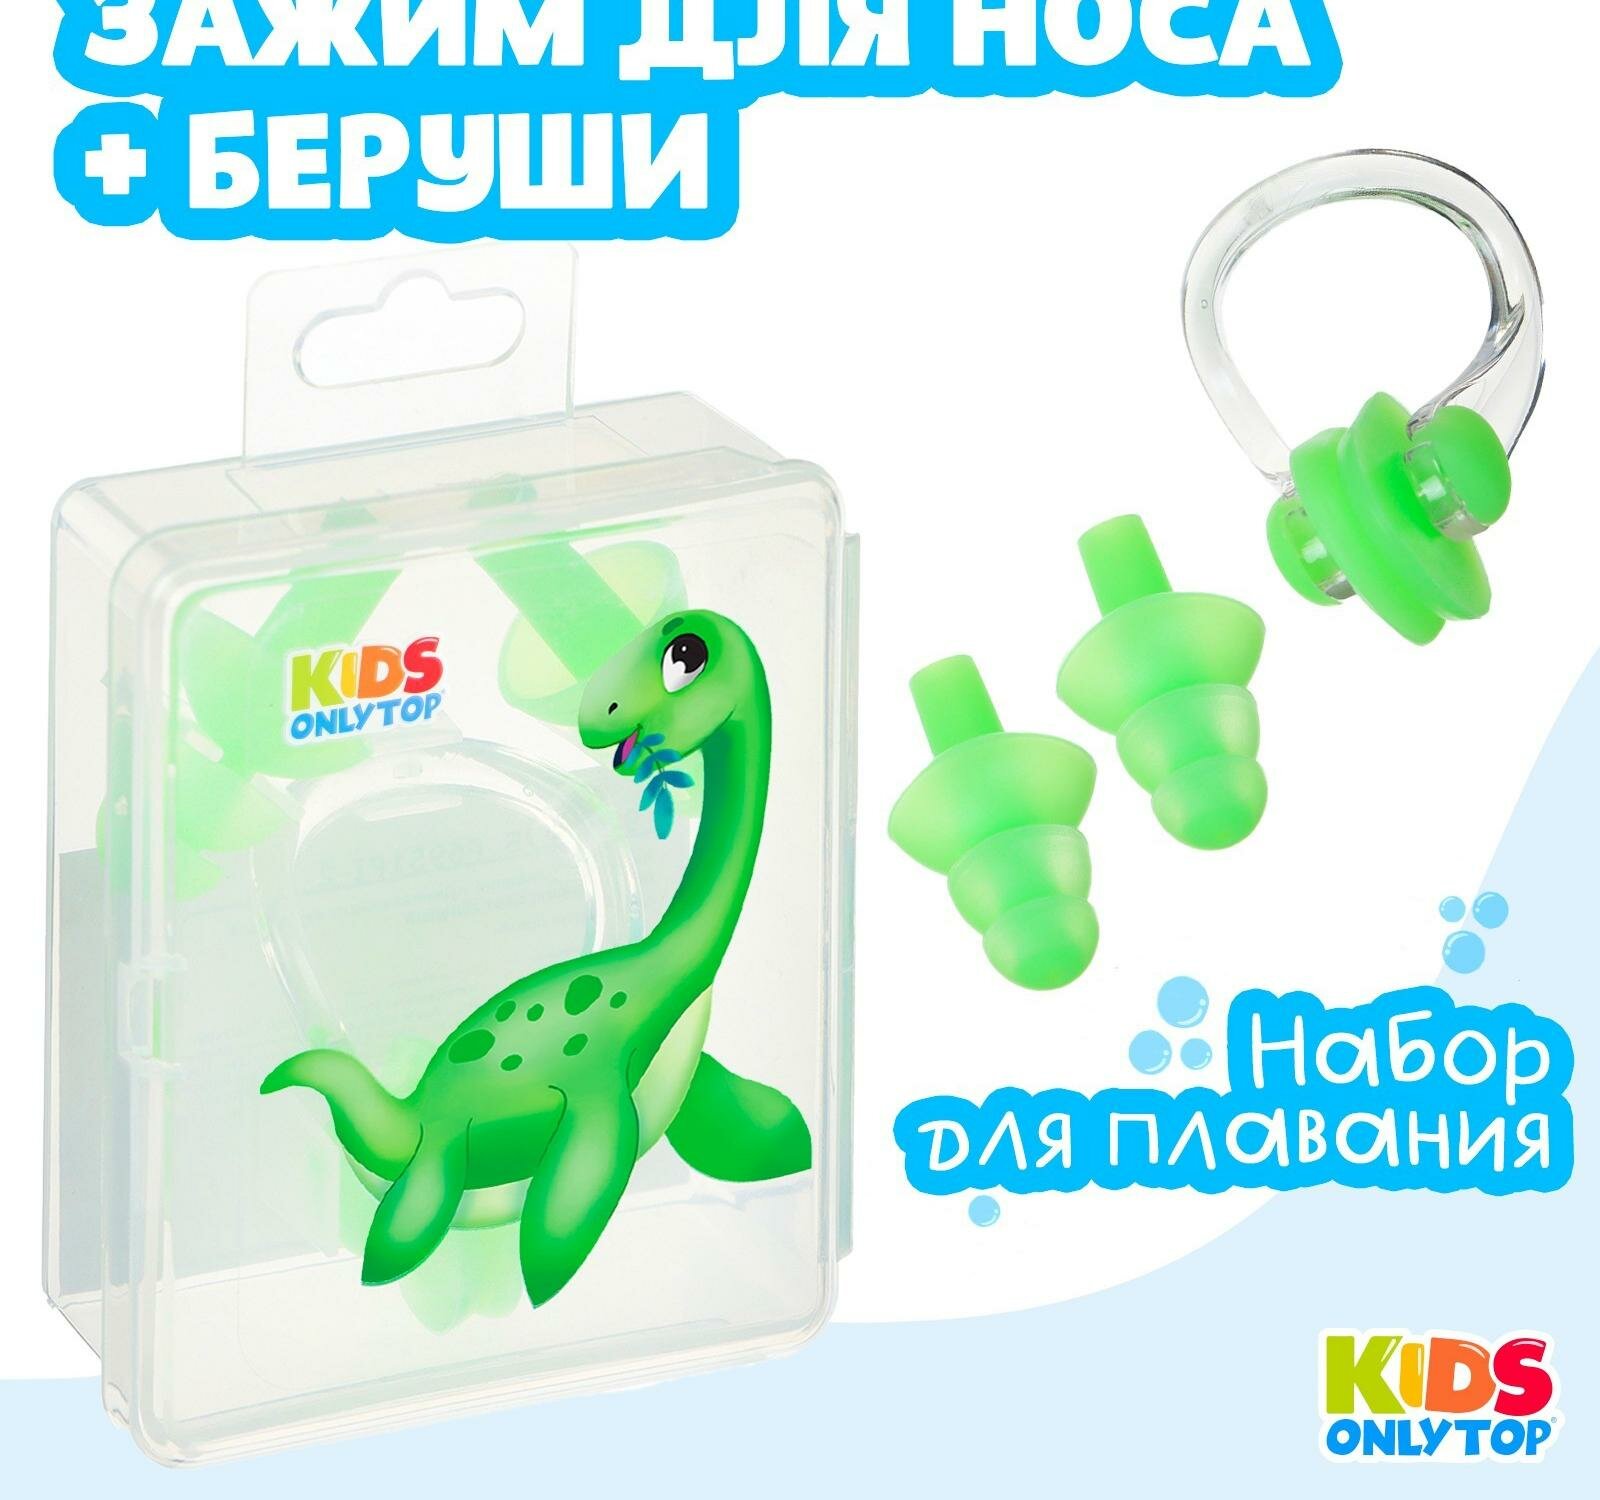 Набор для плавания "Динозаврик": зажим для носа, беруши, цвет зеленый 9392775